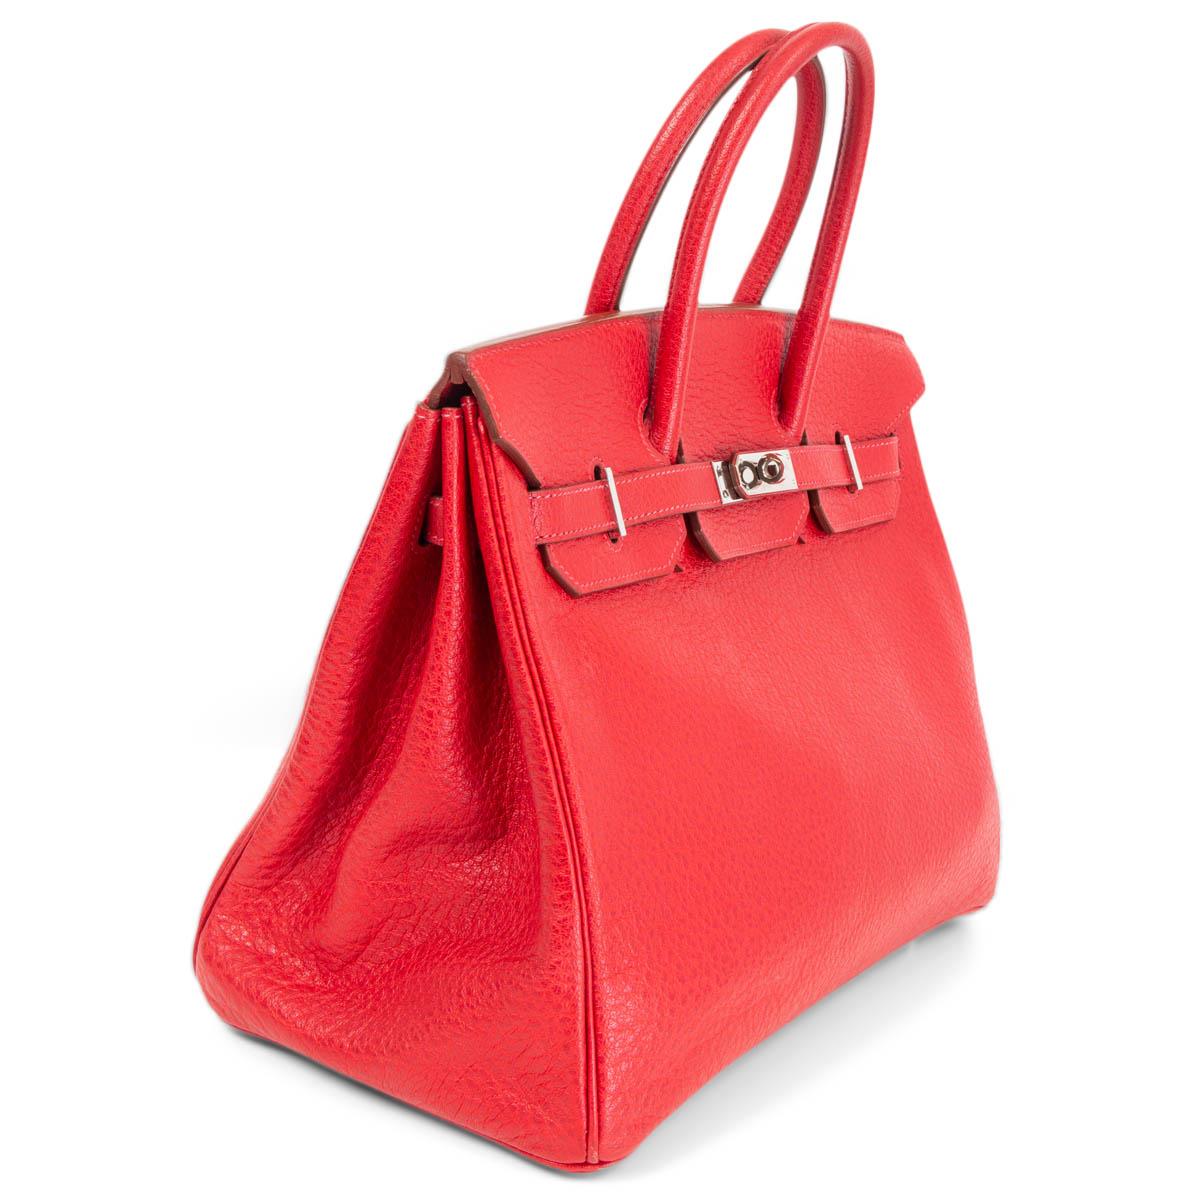 100% authentische Herms 'Birkin 35' Tasche aus Rouge Vif (rot) Seilleder mit Palladiumbeschlägen. Leinen in Chevre ( Ziegenleder) mit einer offenen Tasche auf der Vorderseite und einer Reißverschlusstasche auf der Rückseite. Es wurde getragen und